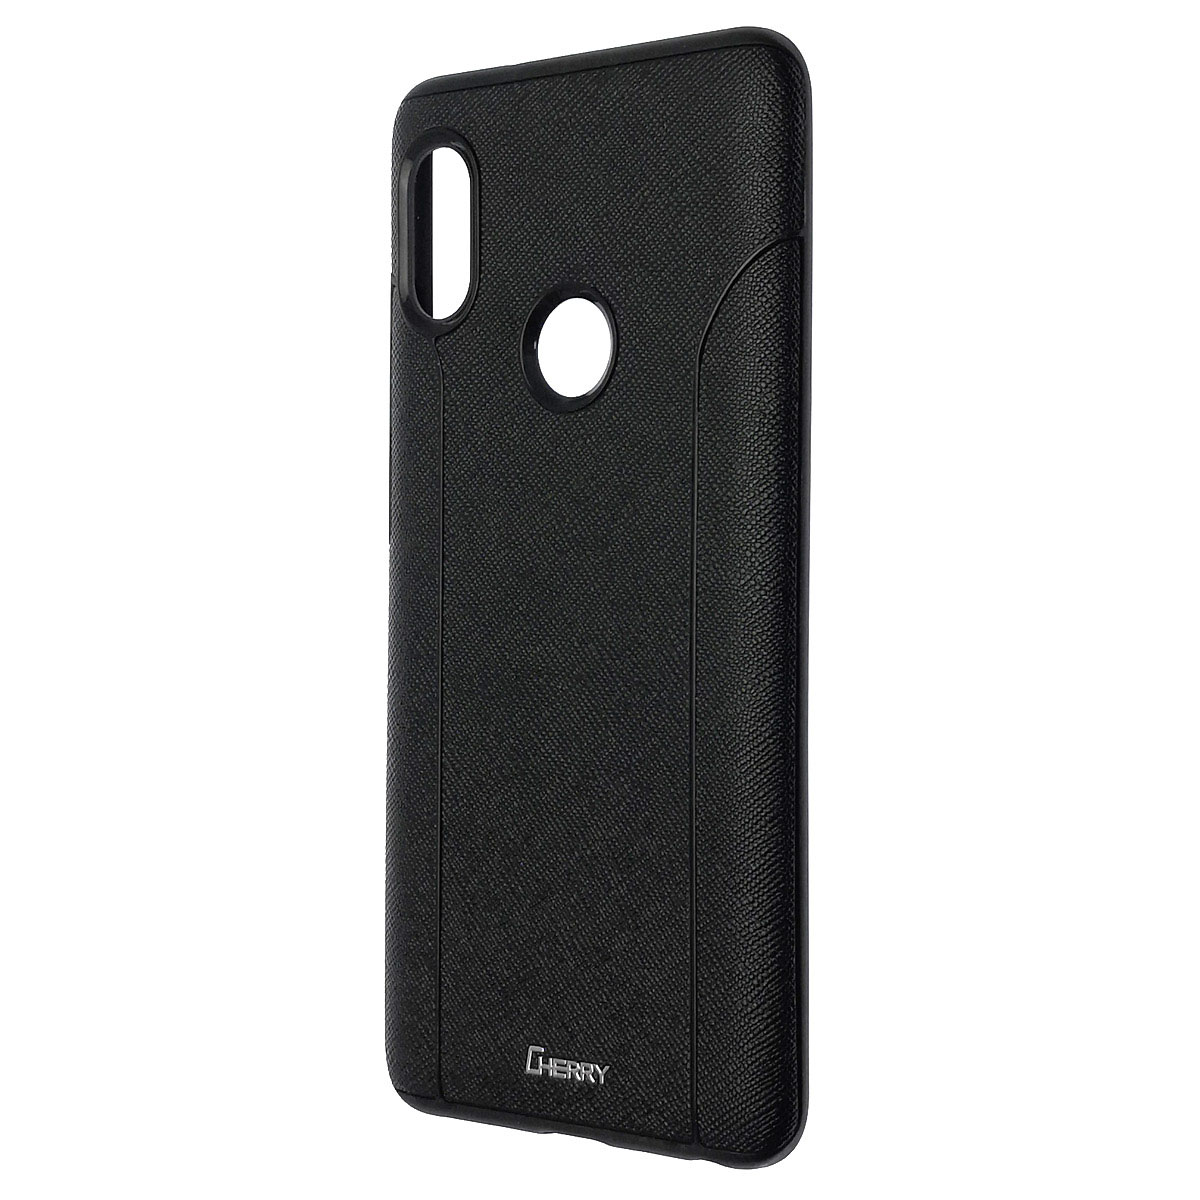 Чехол накладка Cherry II для XIAOMI Redmi Note 5, Note 5 Pro, силикон, цвет черный.